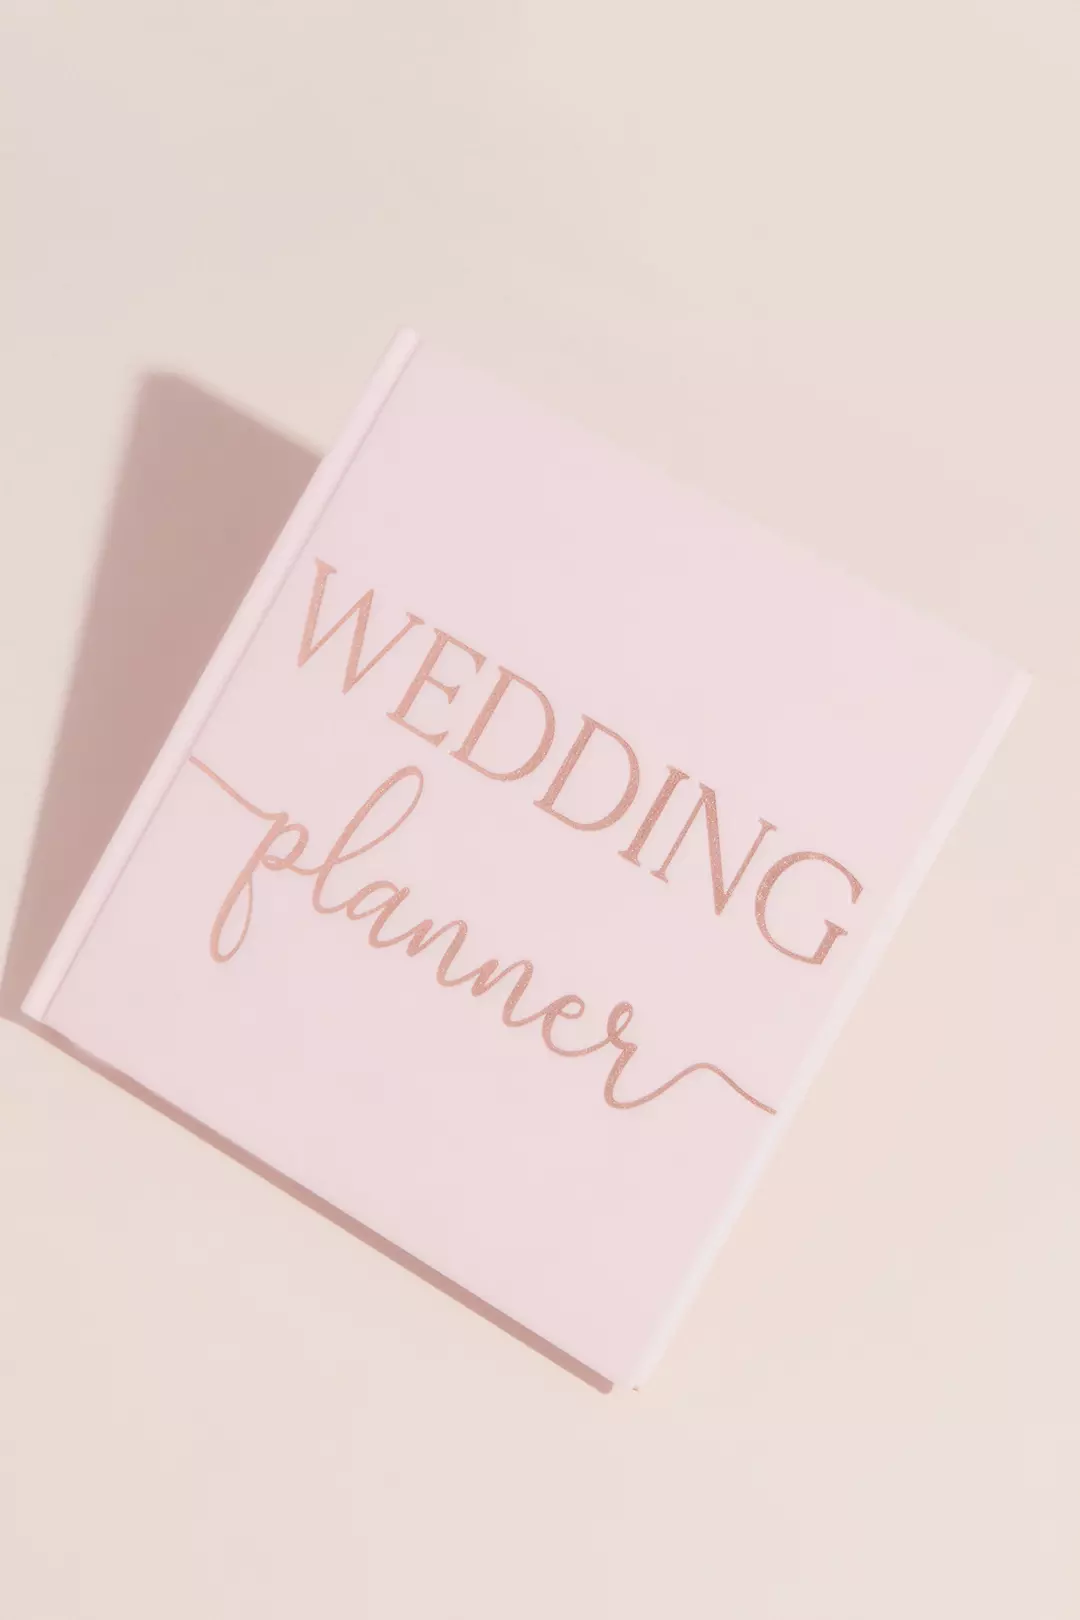 Wedding Planning Bound Notebook Image